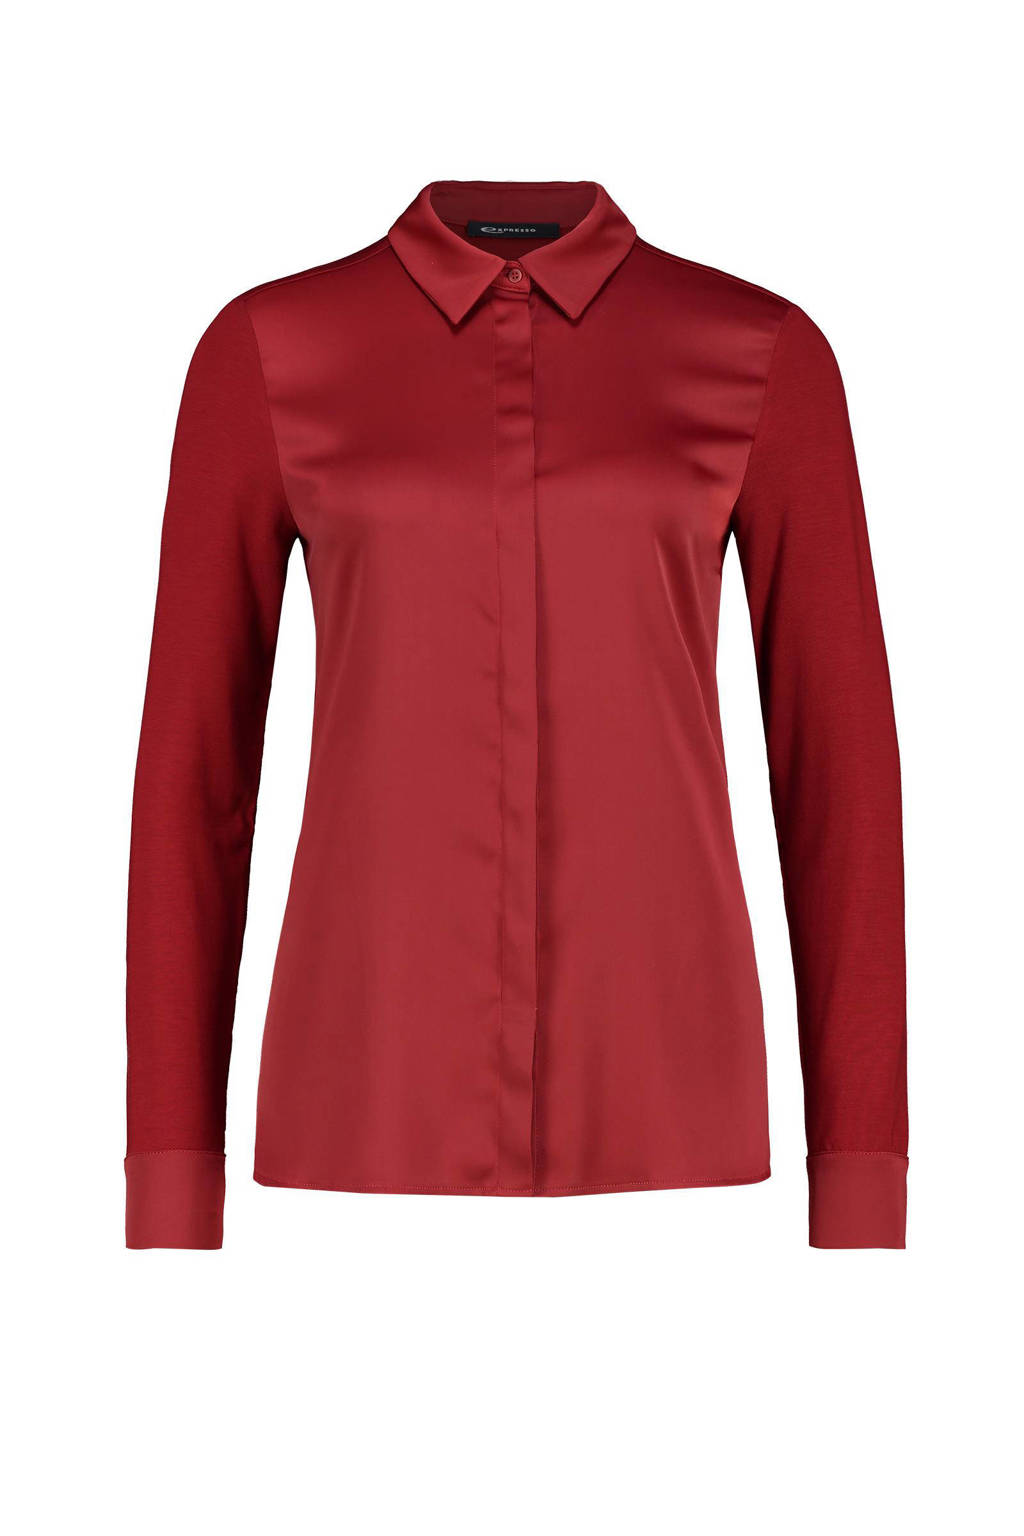 Zin Klagen extreem Expresso blouse XIPPE rood kopen? | Morgen in huis | wehkamp